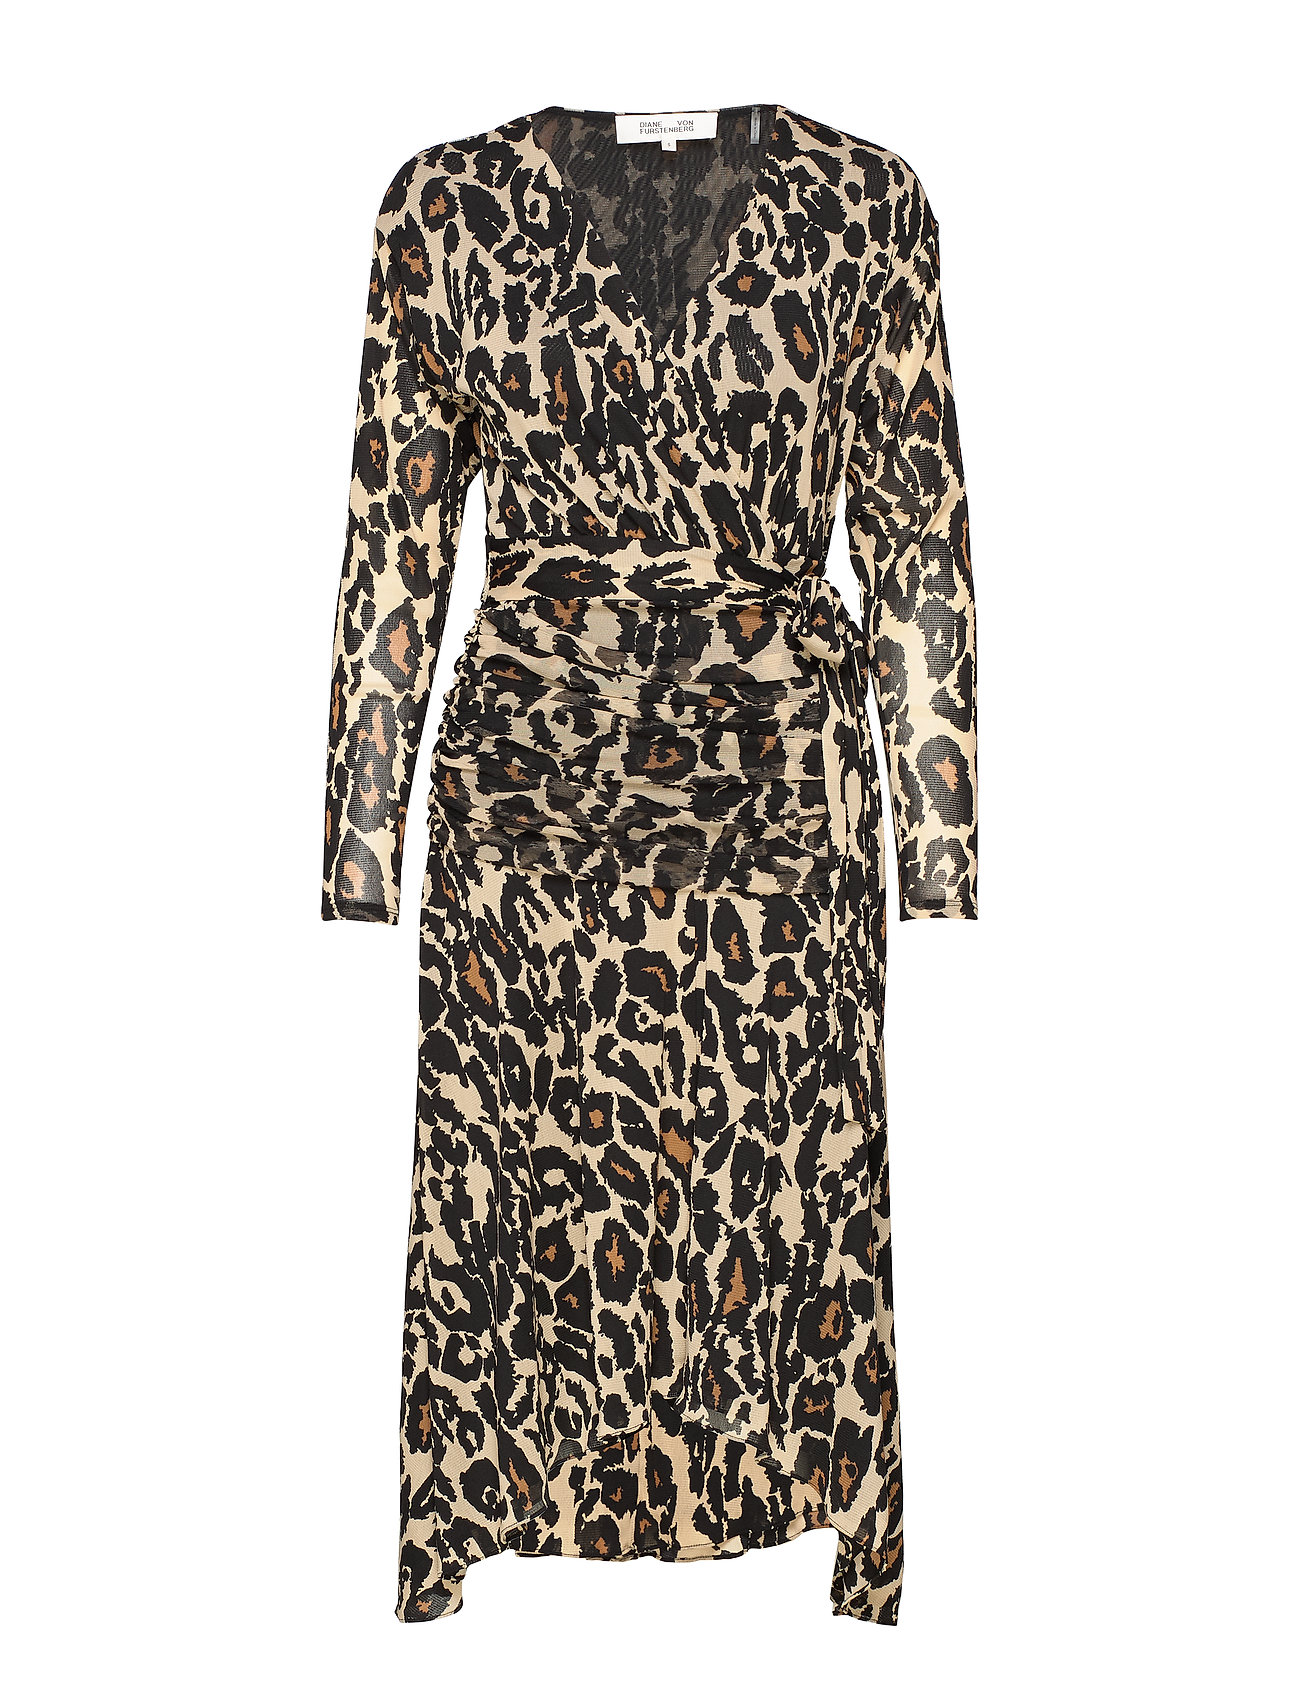 diane von furstenberg leopard wrap dress